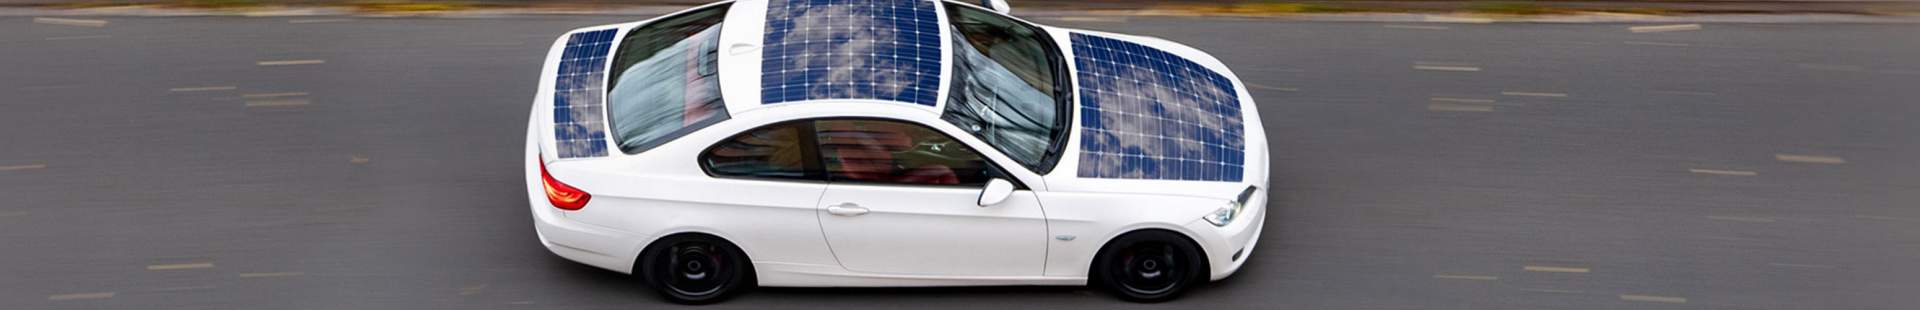 Solarauto auf einer Straße